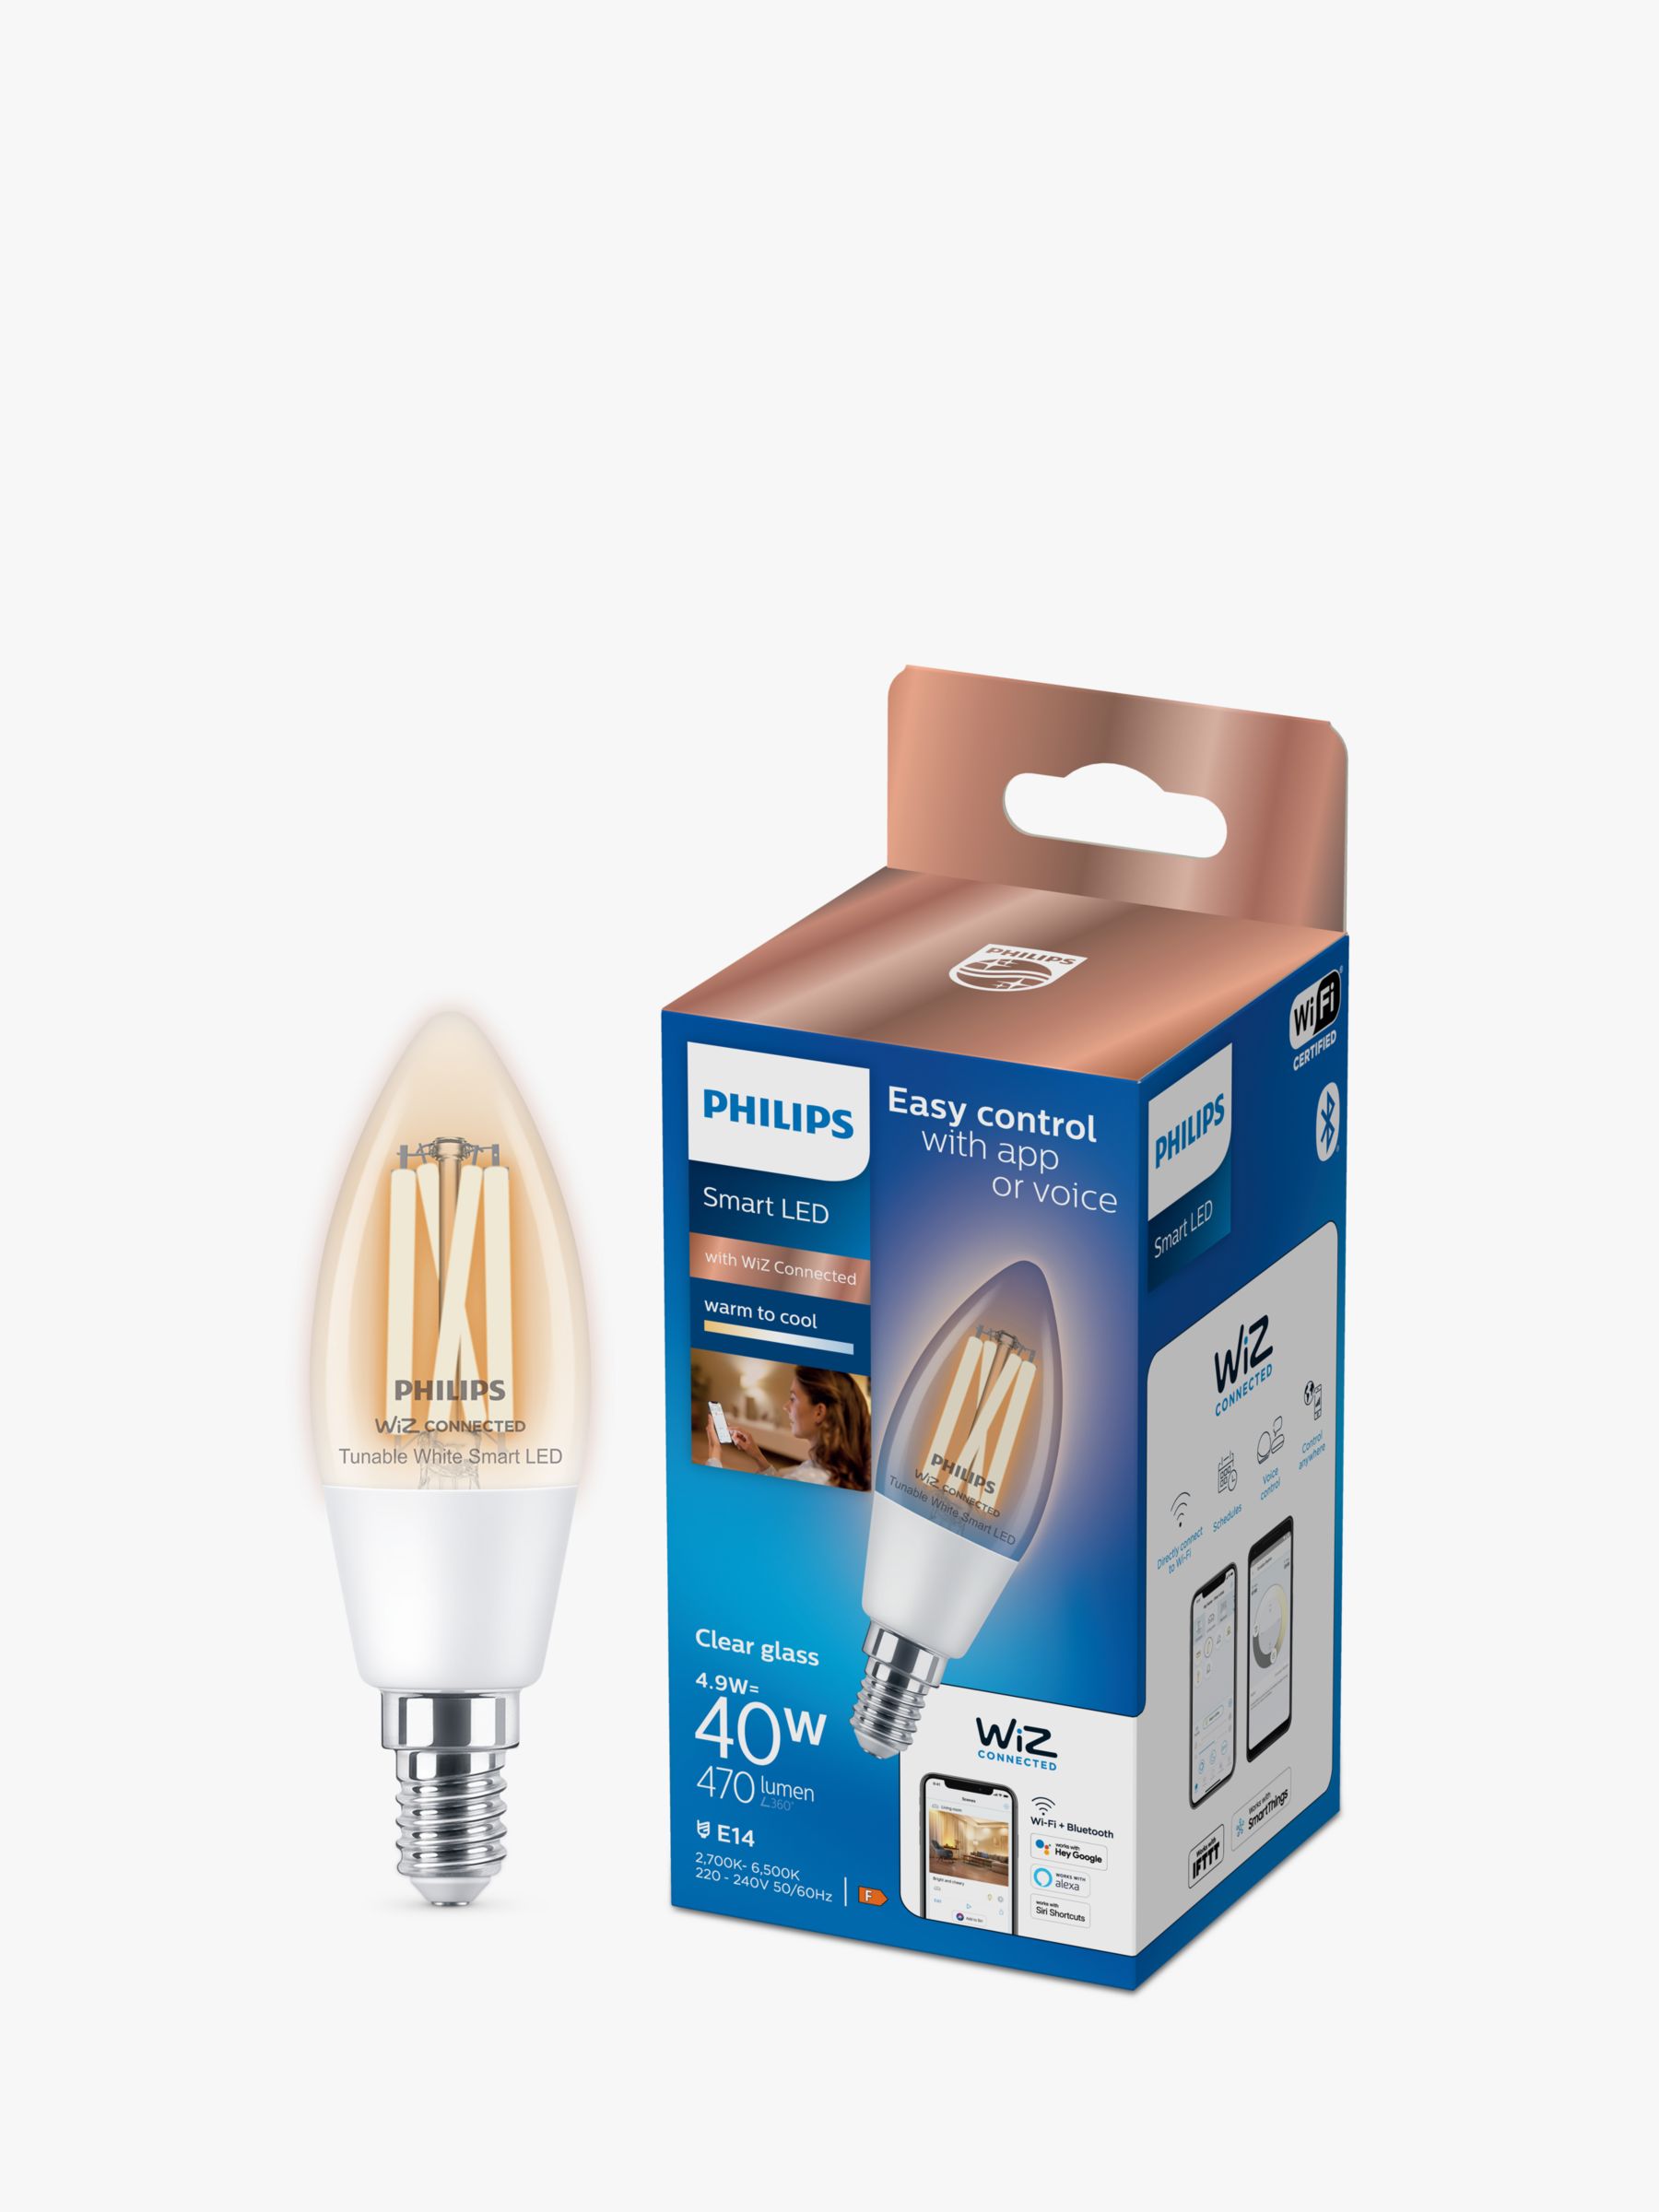 Hue Candle E14 LED Bulb – White Filament